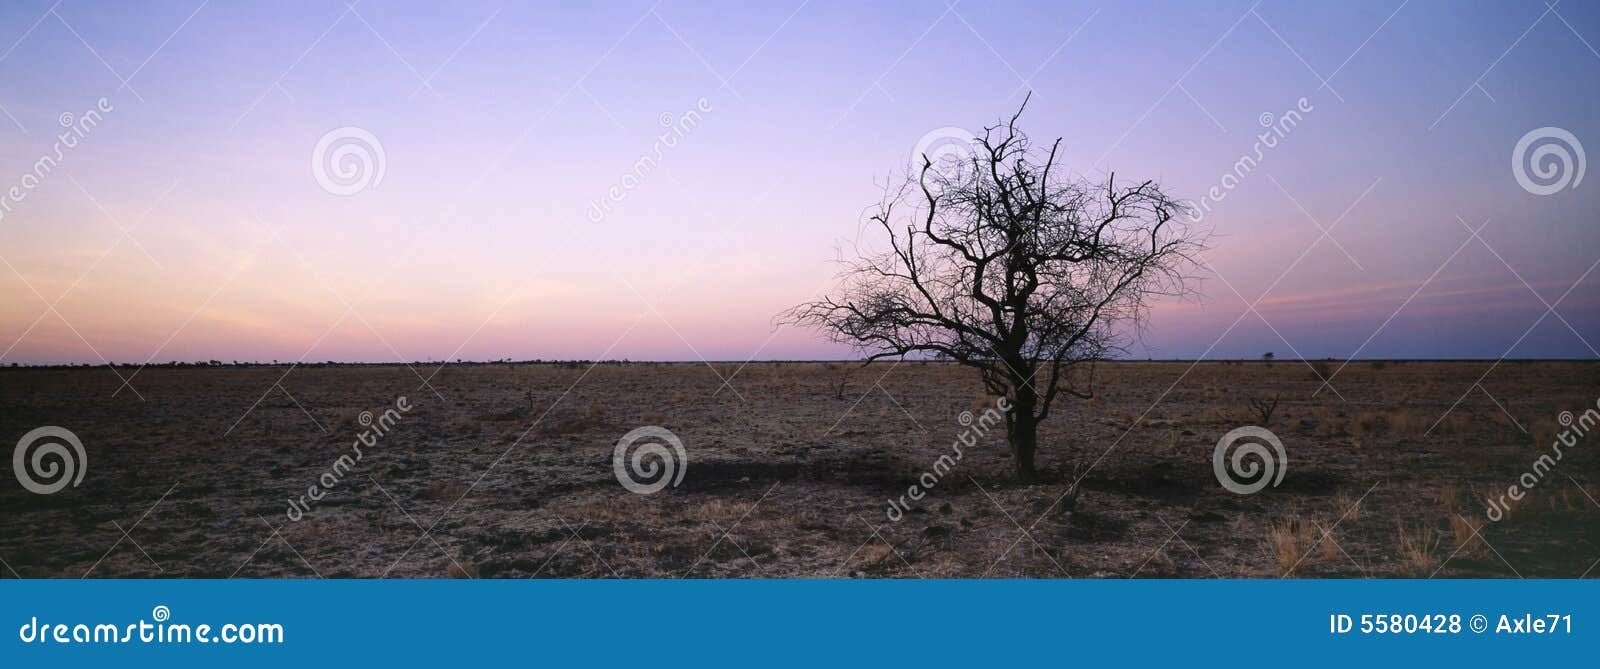 tree in arid landscape